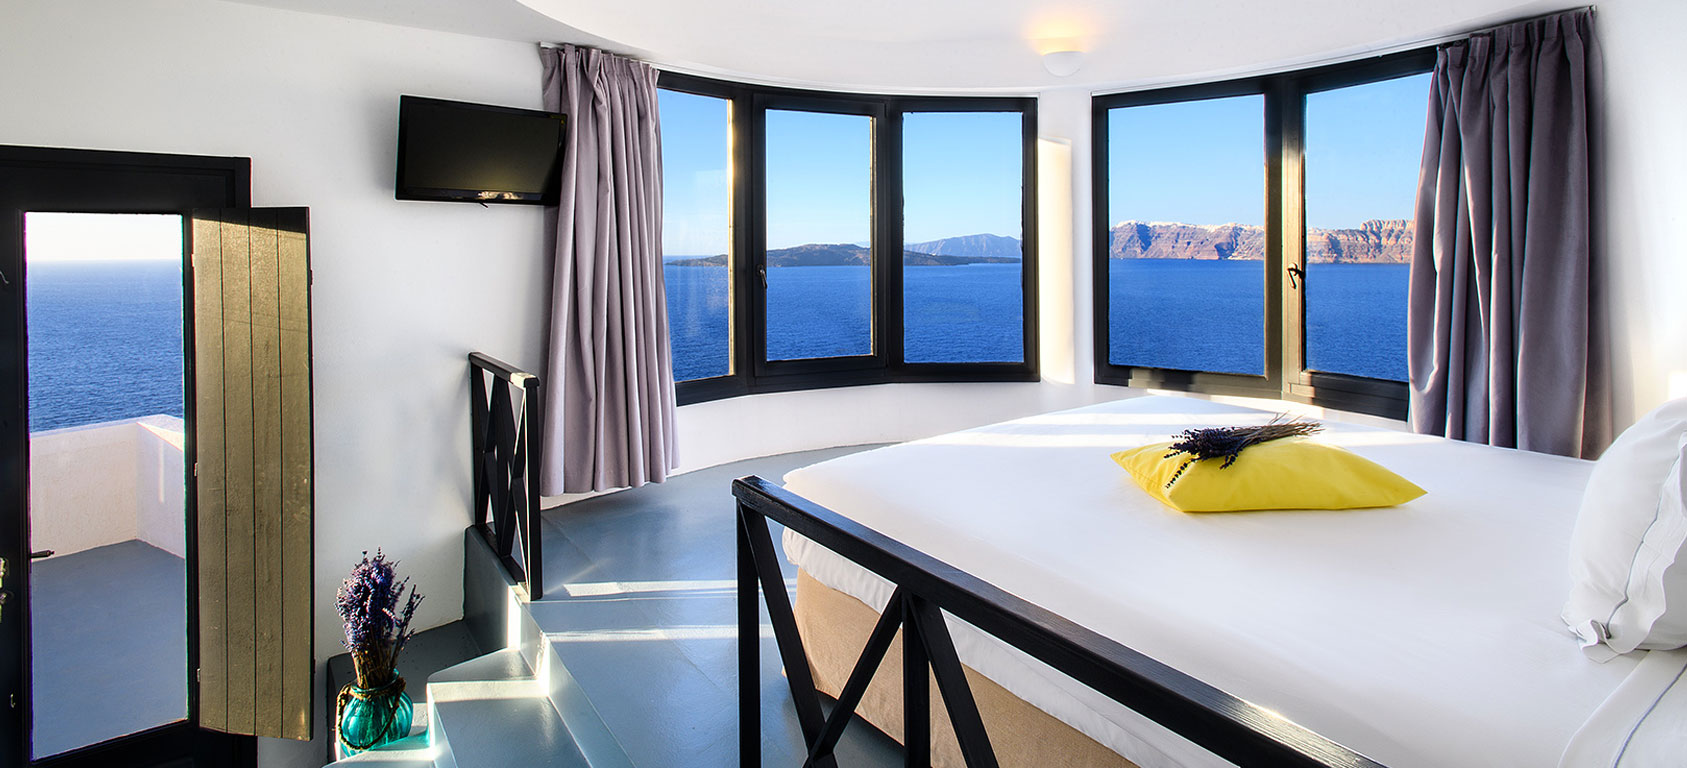 The Ambassador Villa Private Pool & Spa, Ambassador Aegean Luxury, Santorini